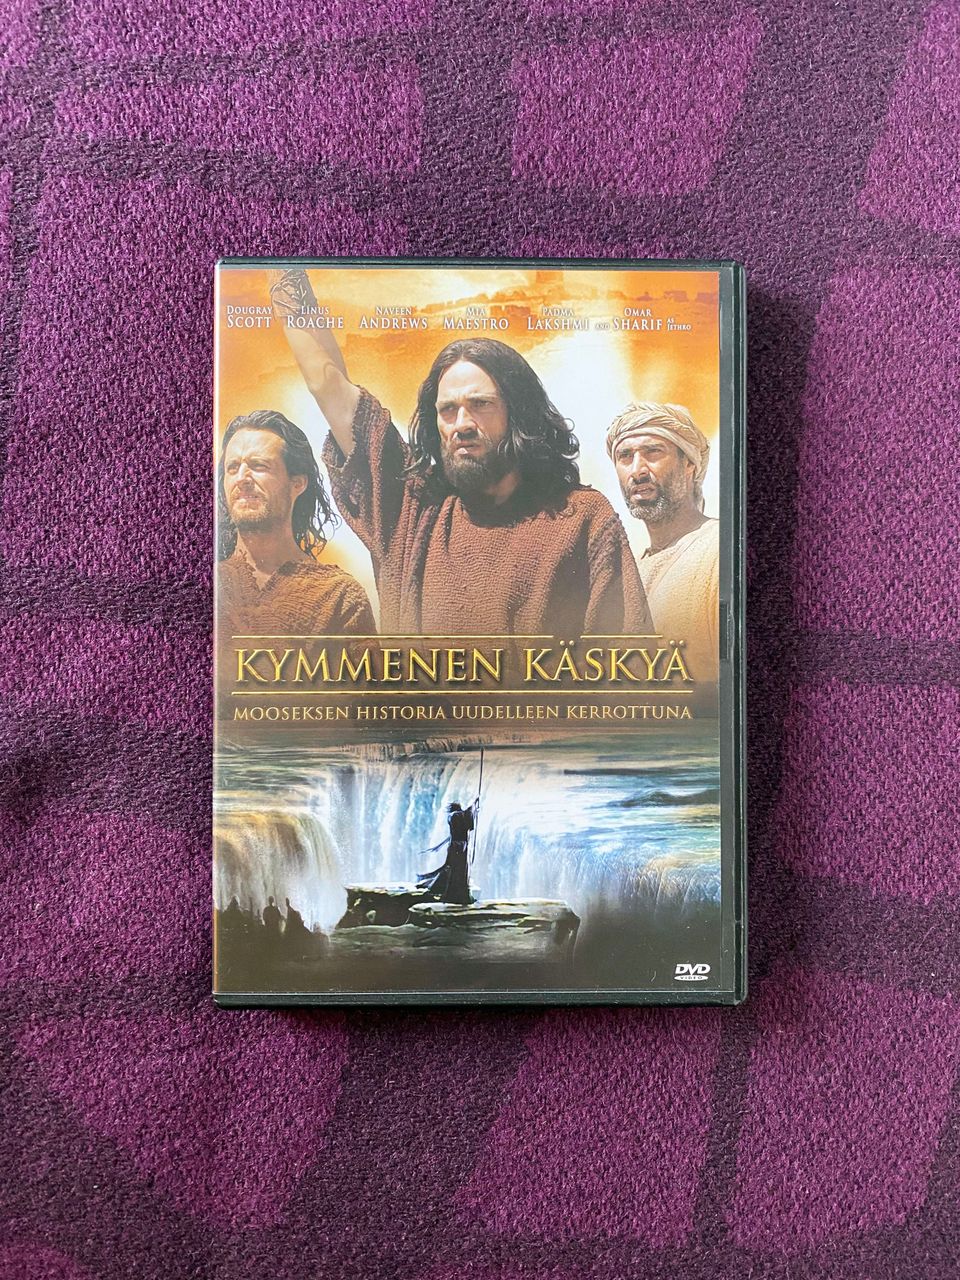 Kymmenen käskyä (2006) DVD